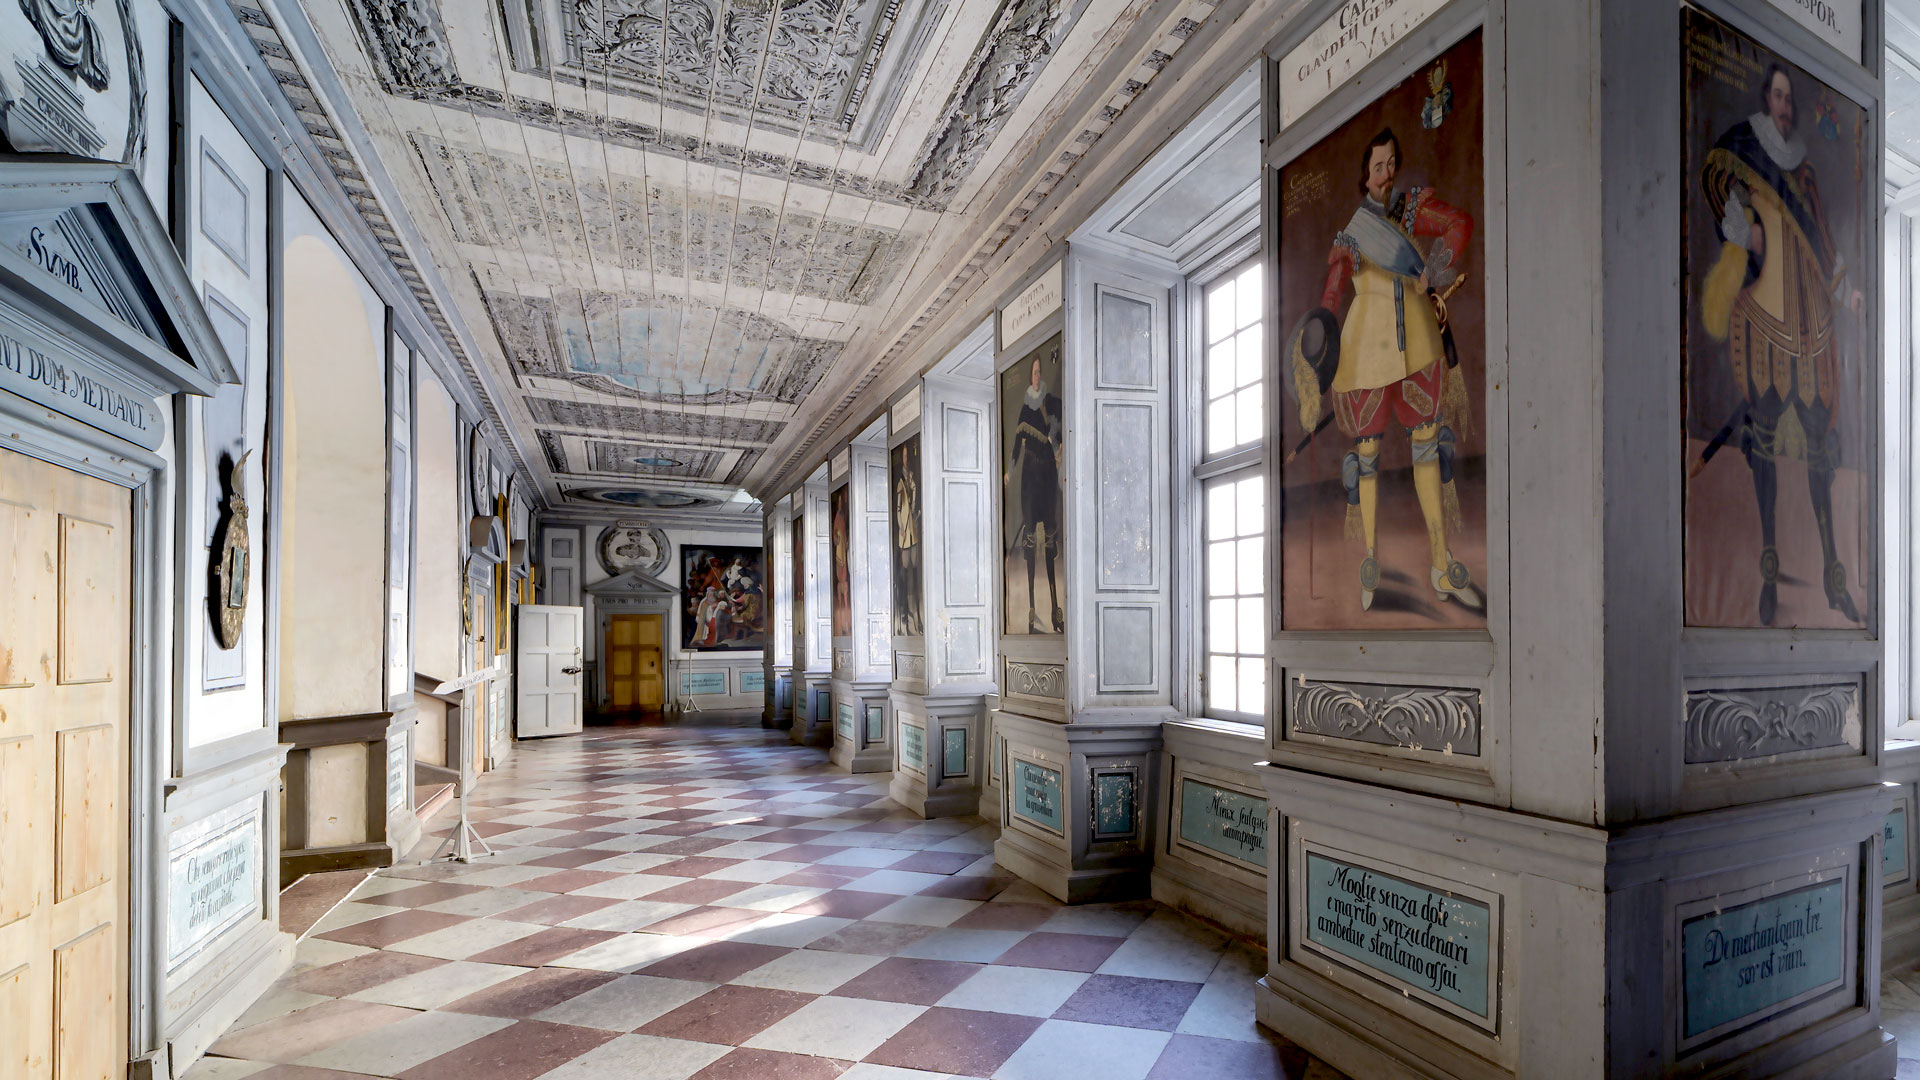 En lång korridor med schackrutigt stengolv i ljusgrått och tegelrött. Längs korridorens ena sida fönster, längs andra dörrar. På väggarna mellan fönstren finns stora 1600-talmålningar som föreställer män i vackra kläder.